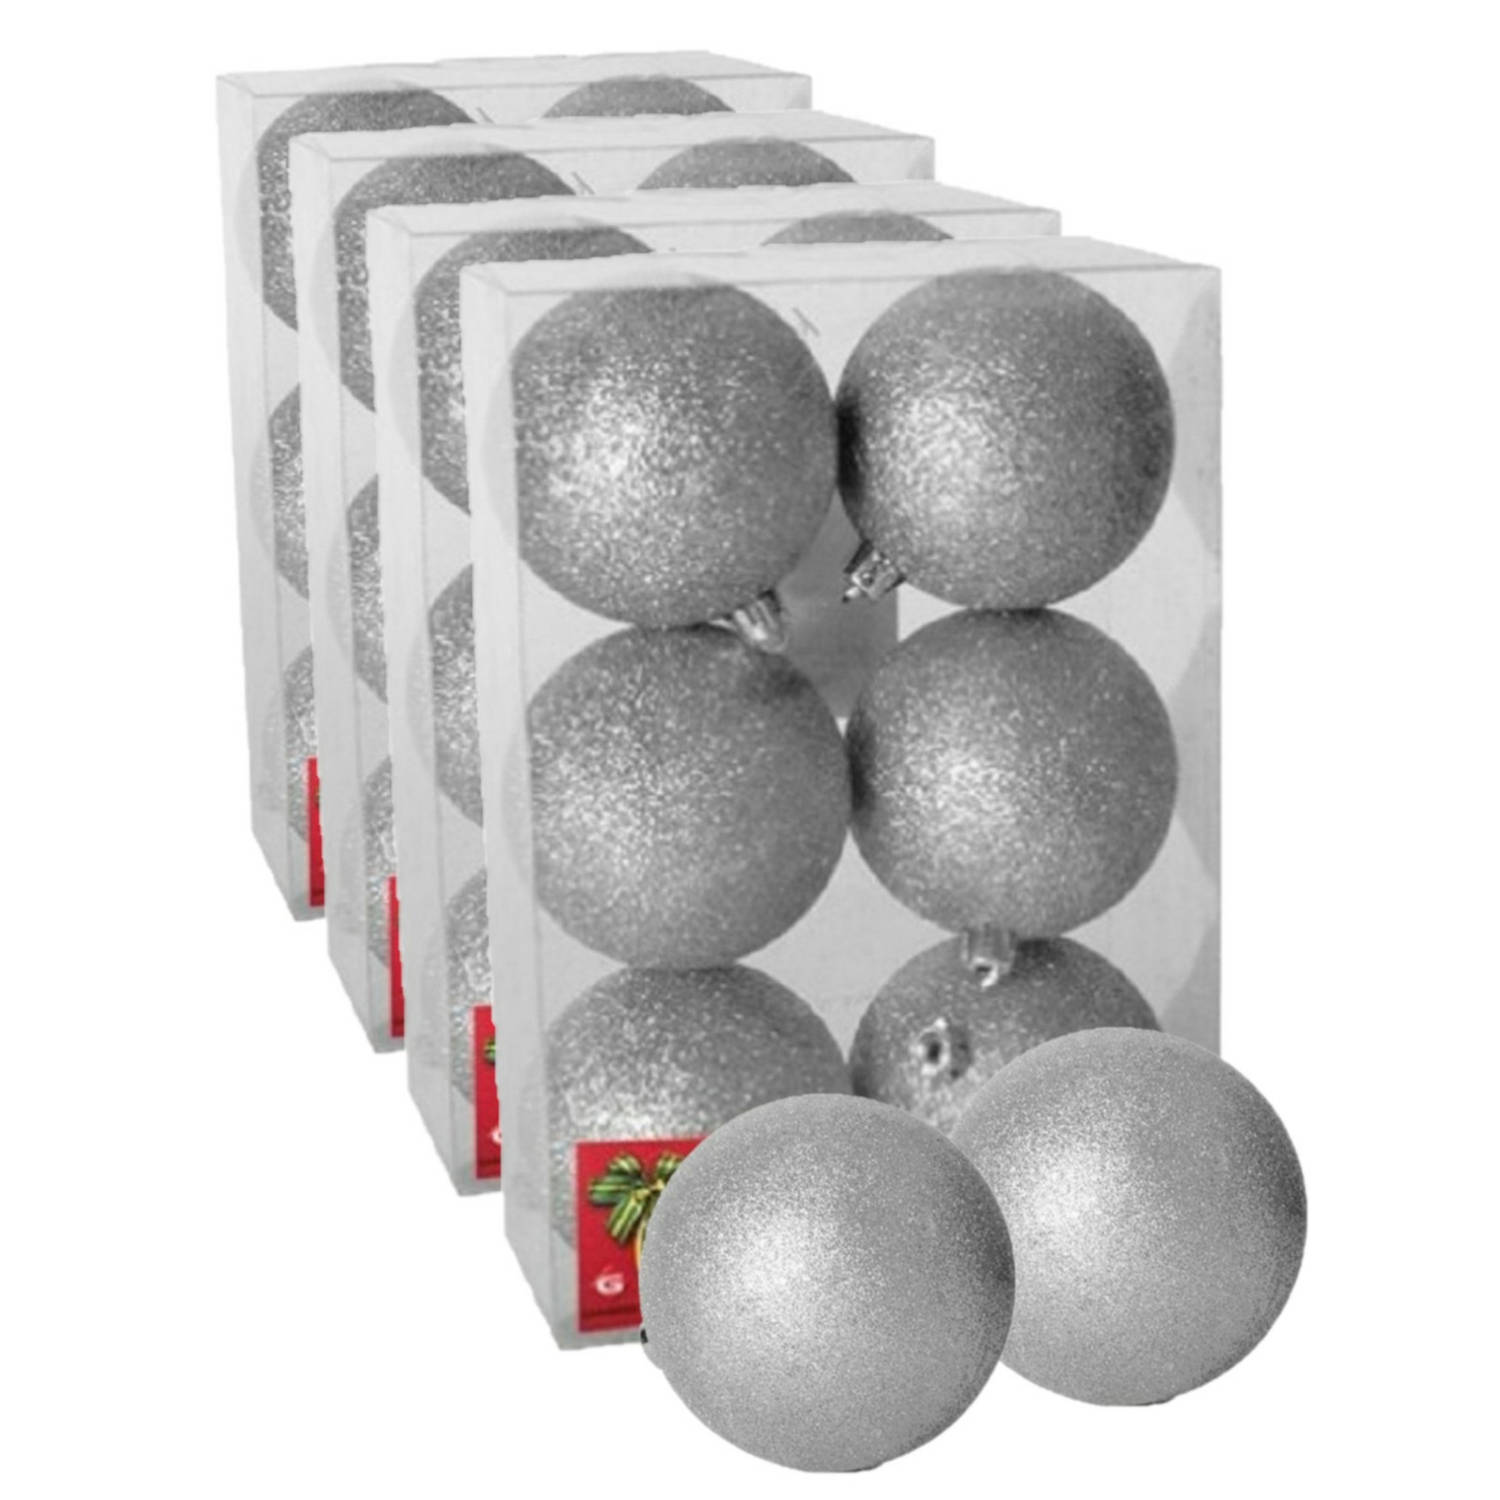 24x stuks kerstballen zilver glitters kunststof 4 cm Kerstbal